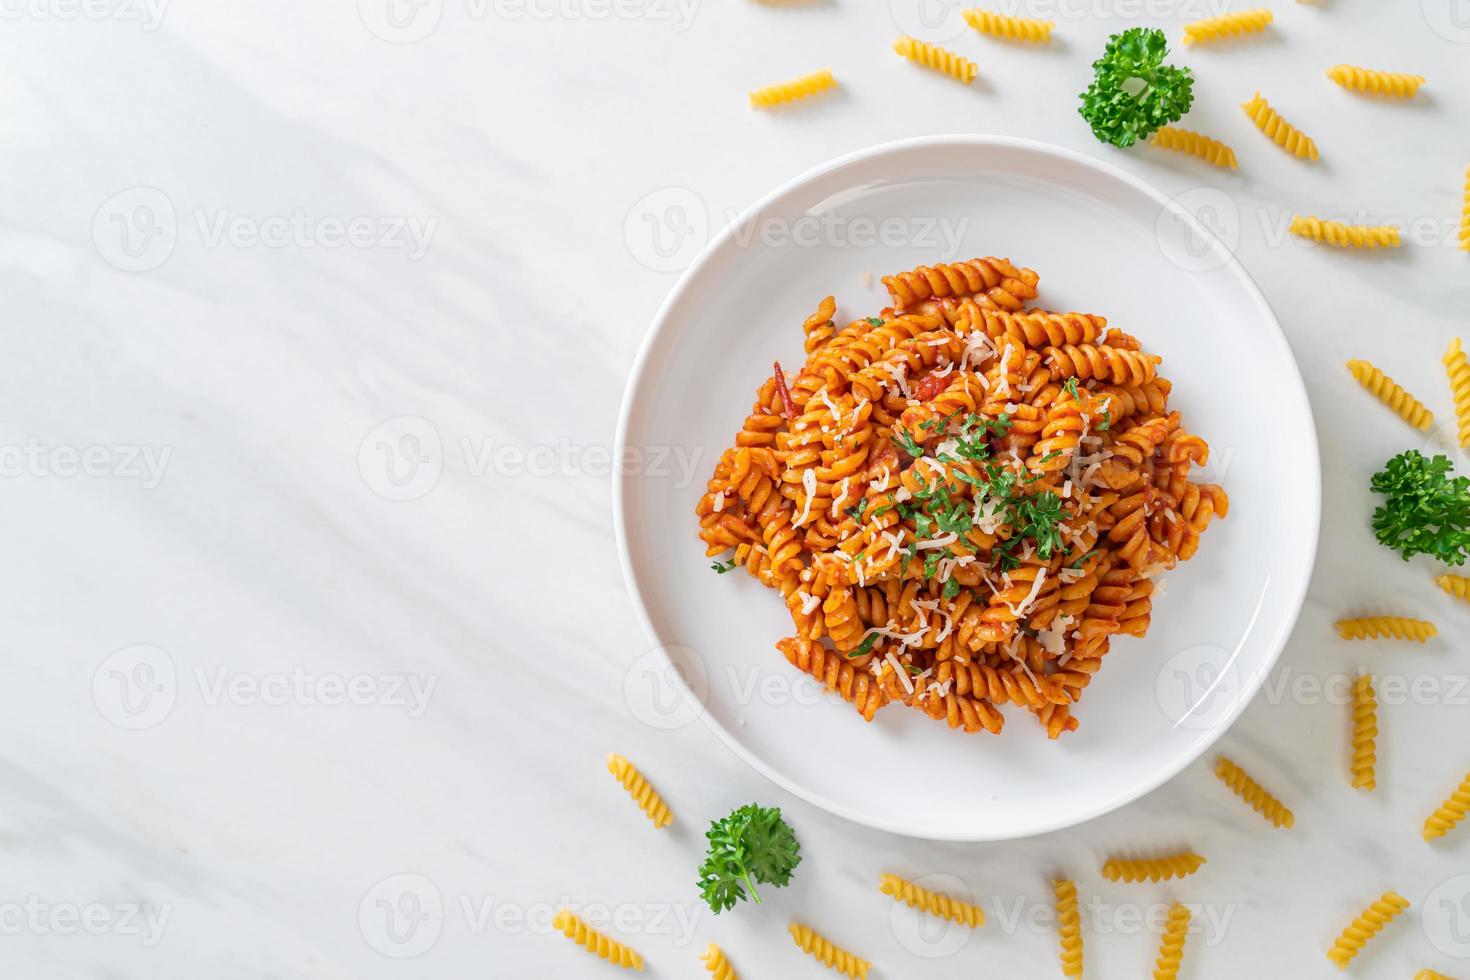 spiraal- of spirali-pasta met tomatensaus en worst - Italiaanse eetstijl food foto